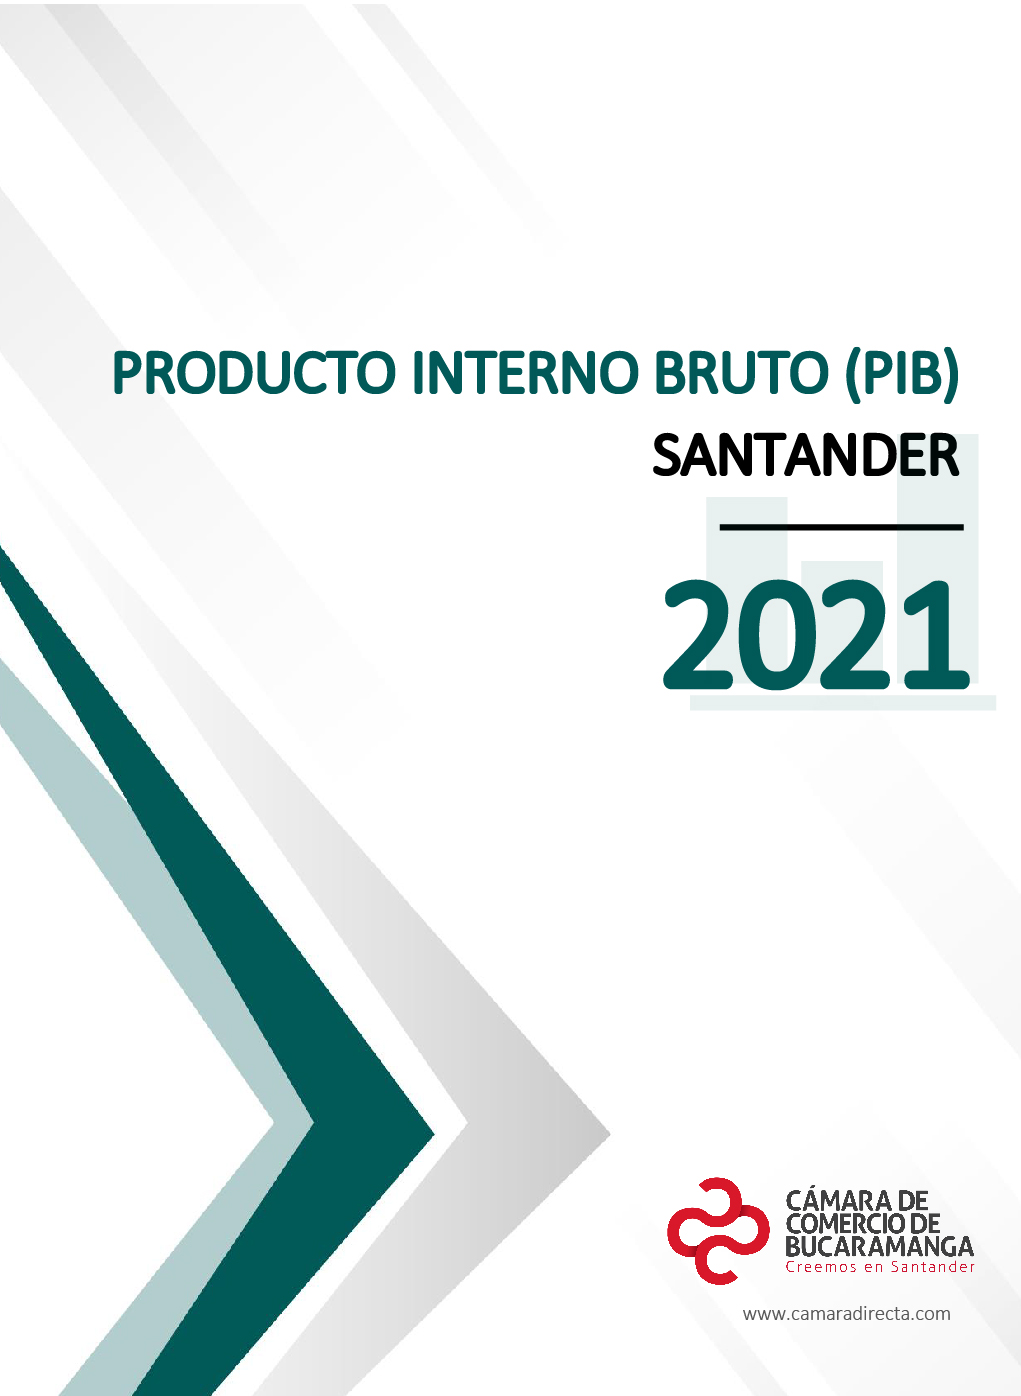 Producto Interno Bruto Santander 2021